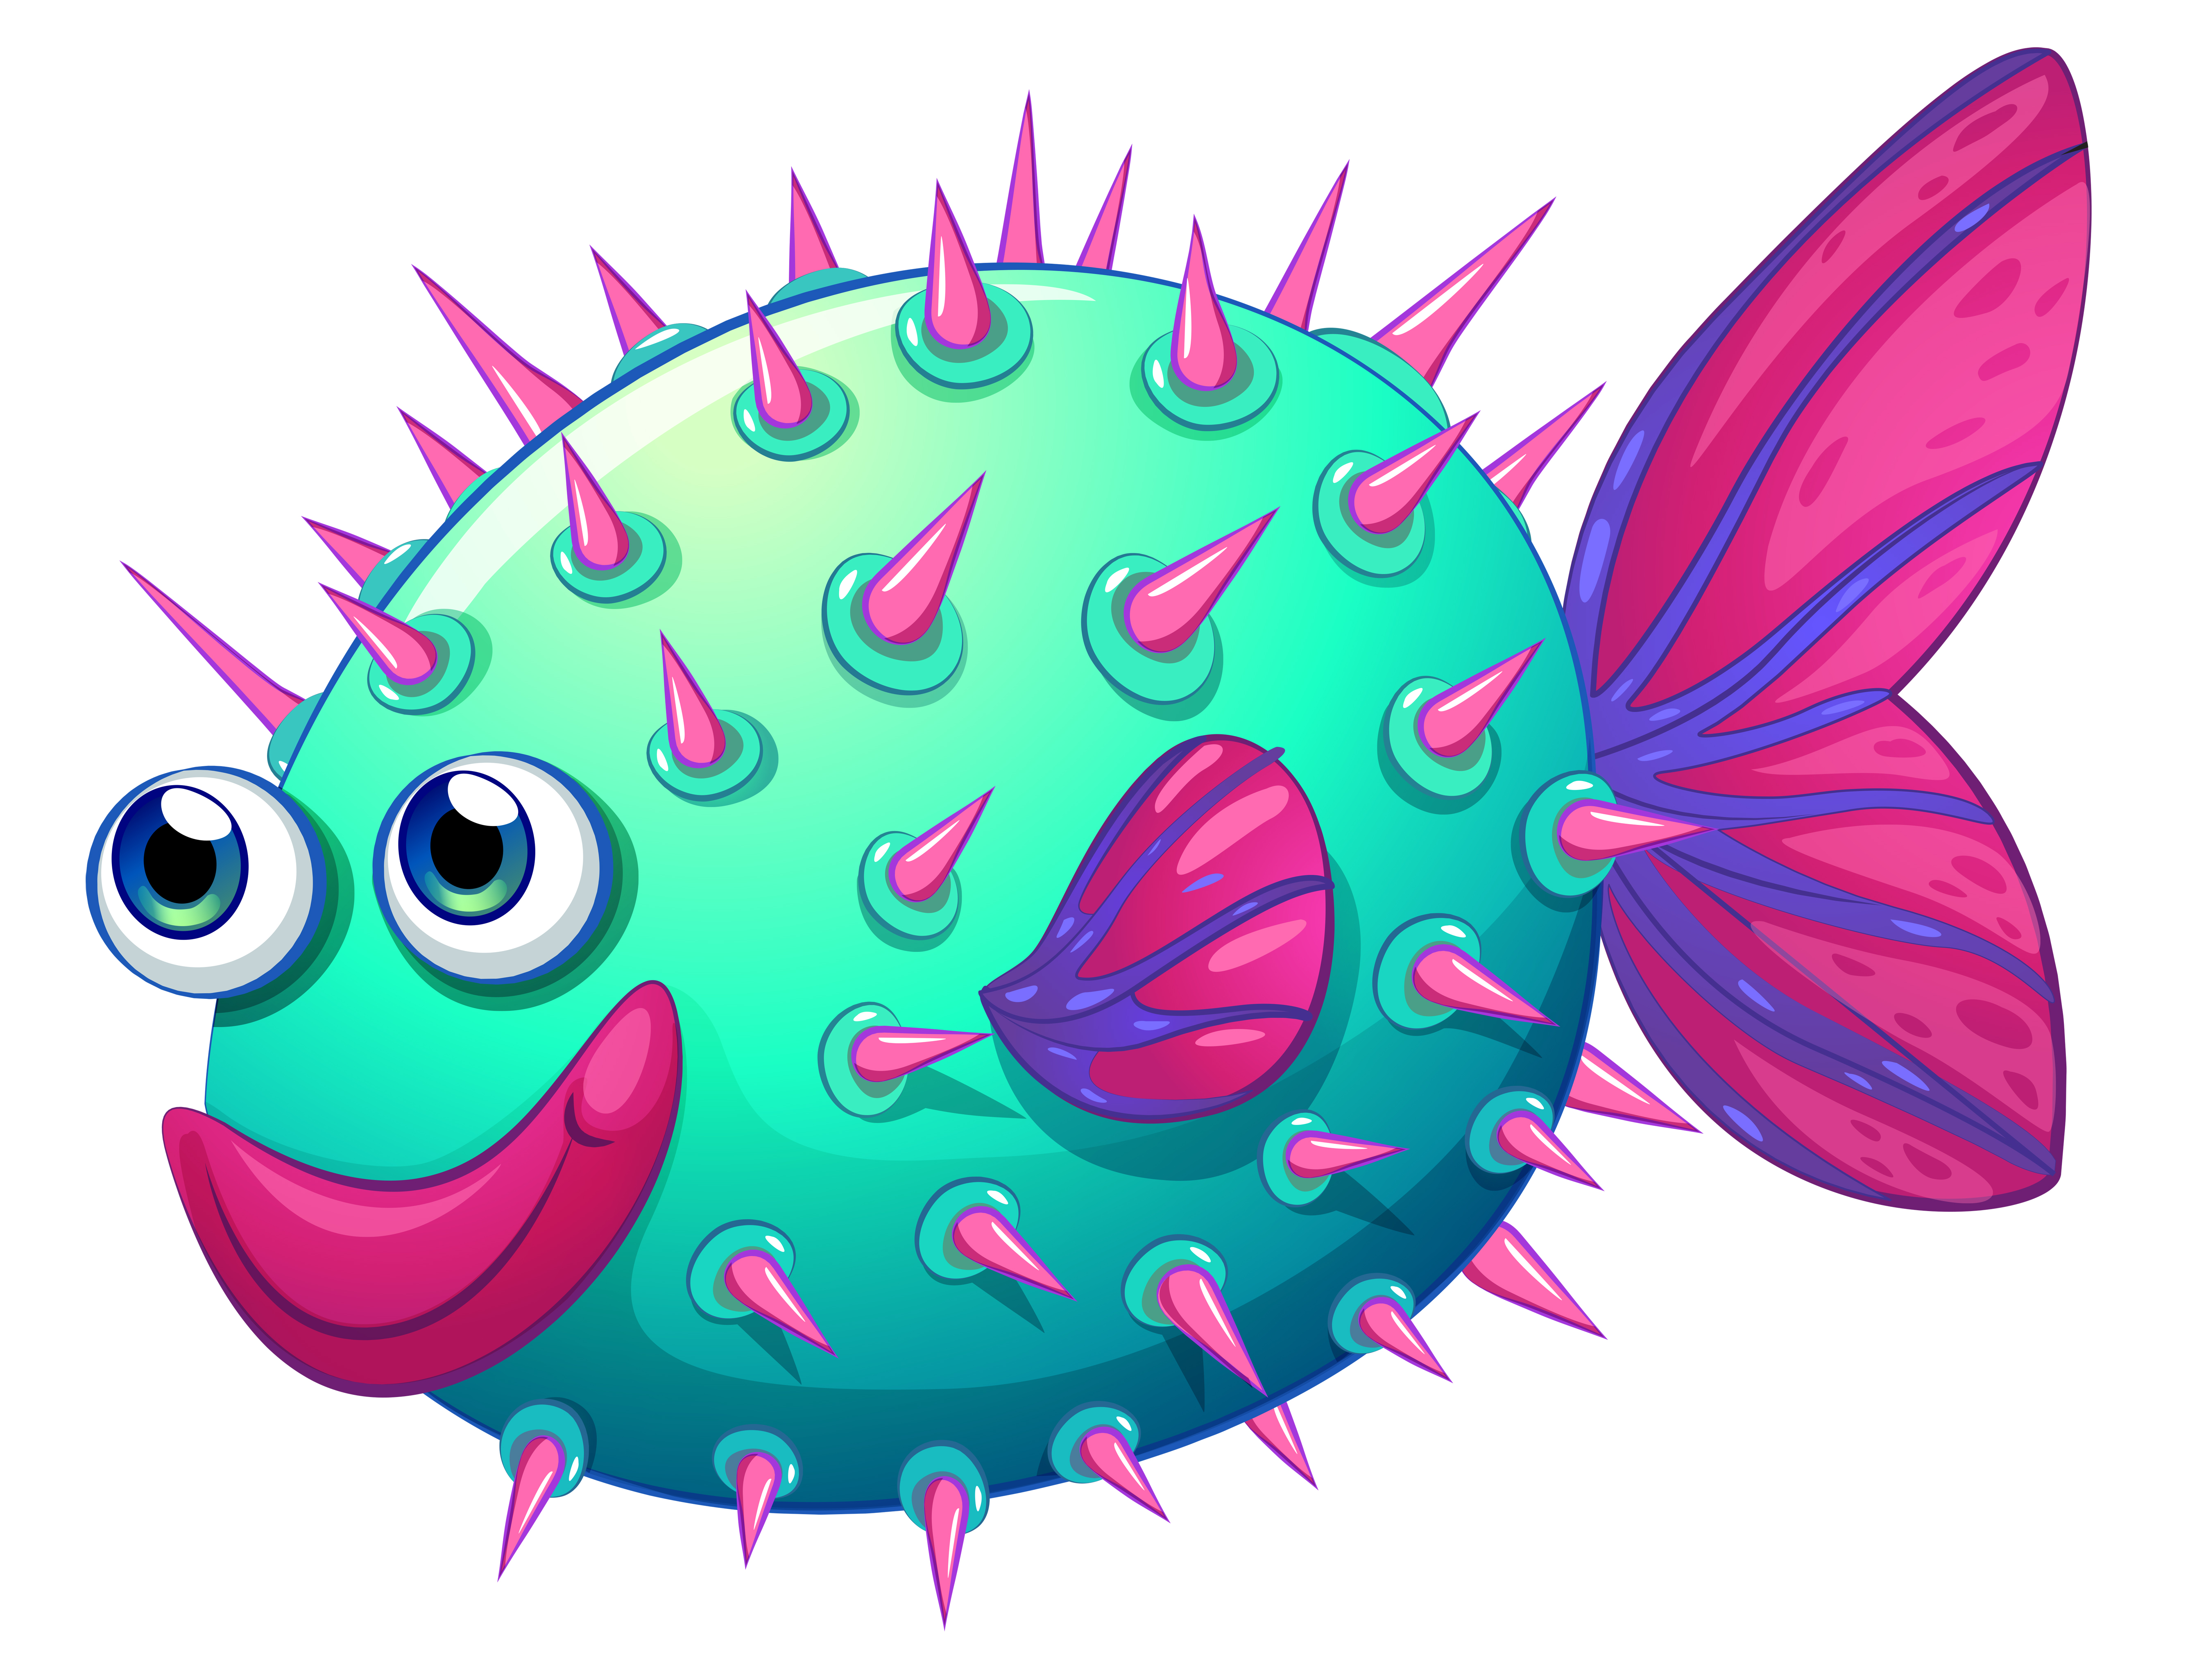 Download A colorful bubble fish - Download Free Vectors, Clipart Graphics & Vector Art